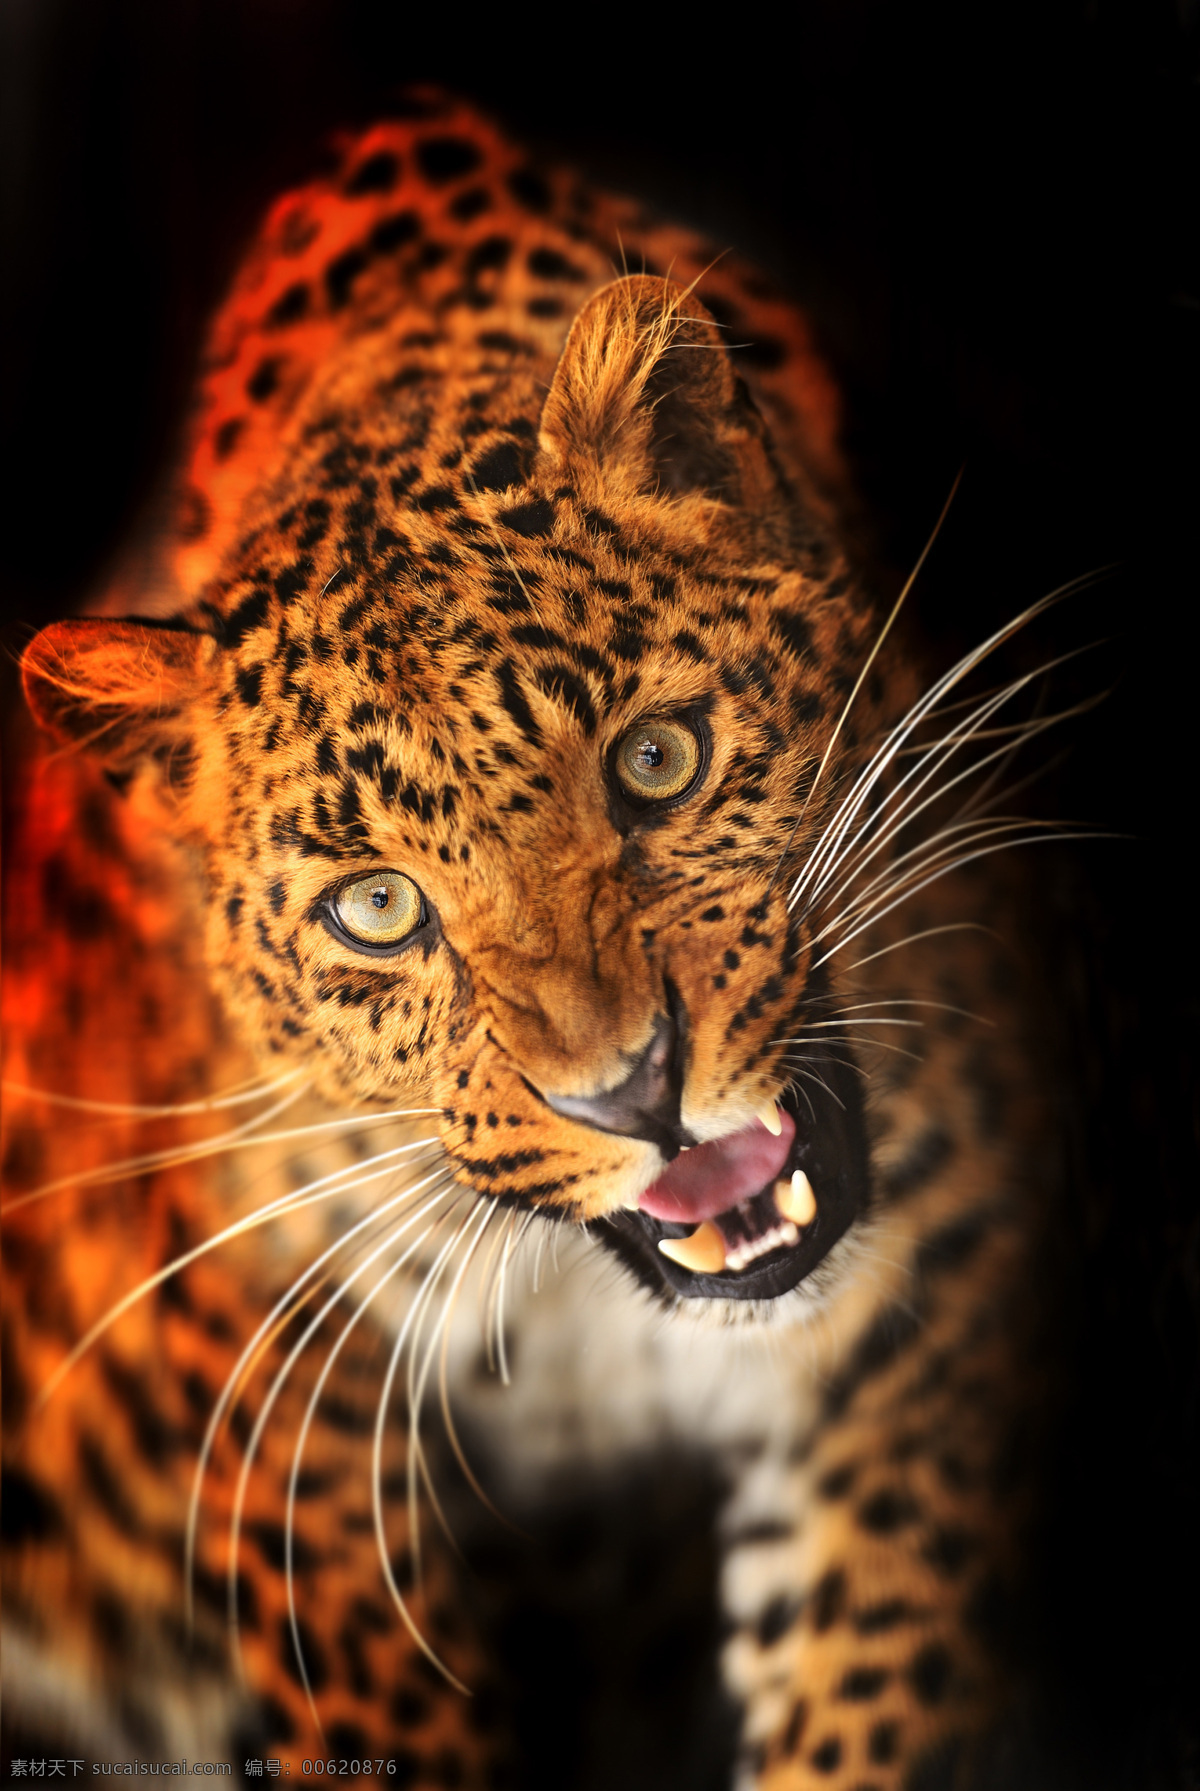 豹子 金钱豹 美洲豹 猎豹 豹纹 猛兽 凶猛 豹子头 猫科动物 野生动物 生物世界